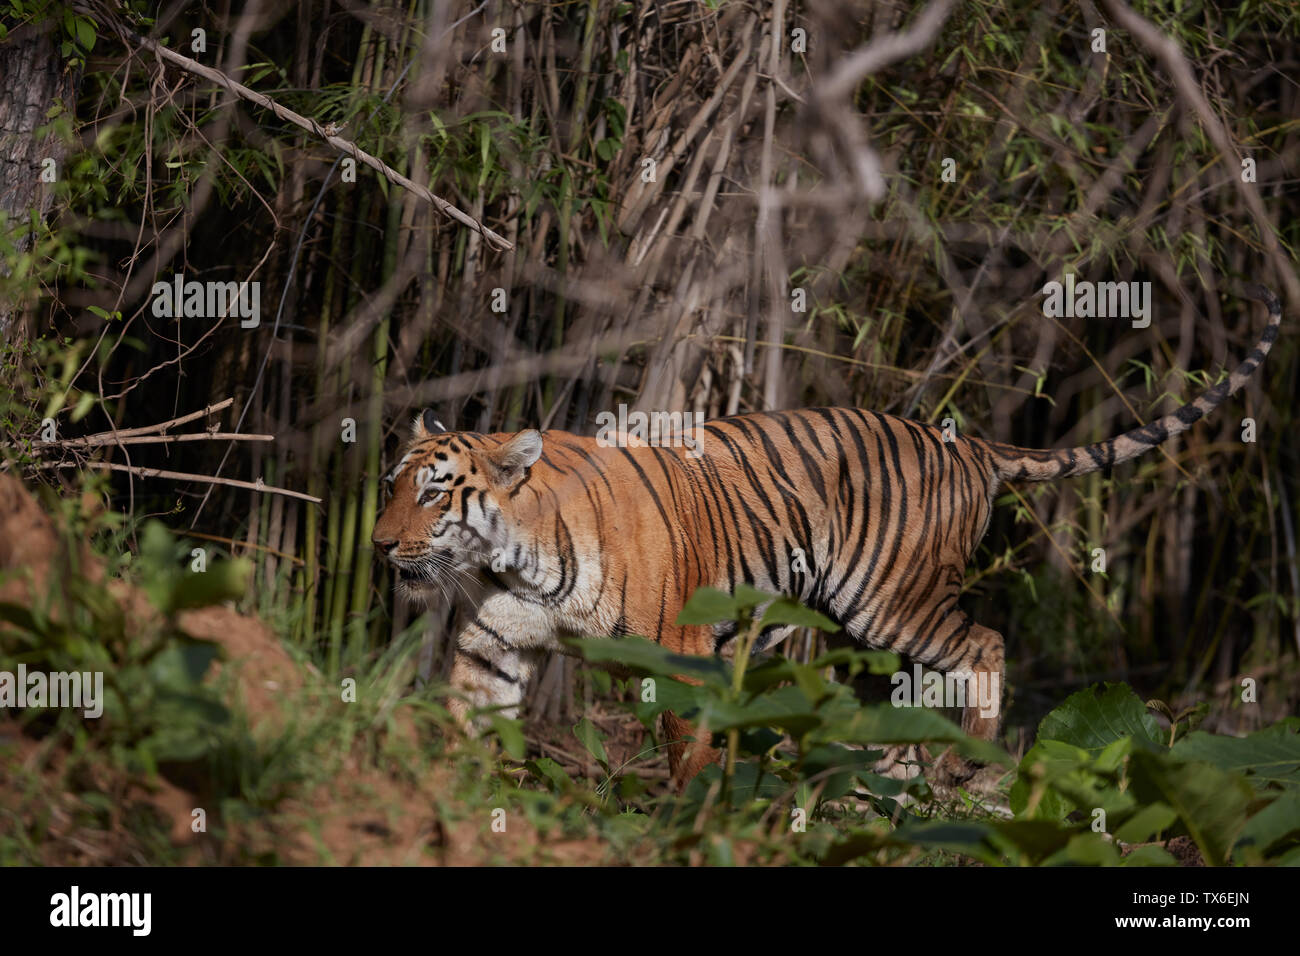 Maya Tigress Prowling at Tadoba Forest, India. Stock Photo